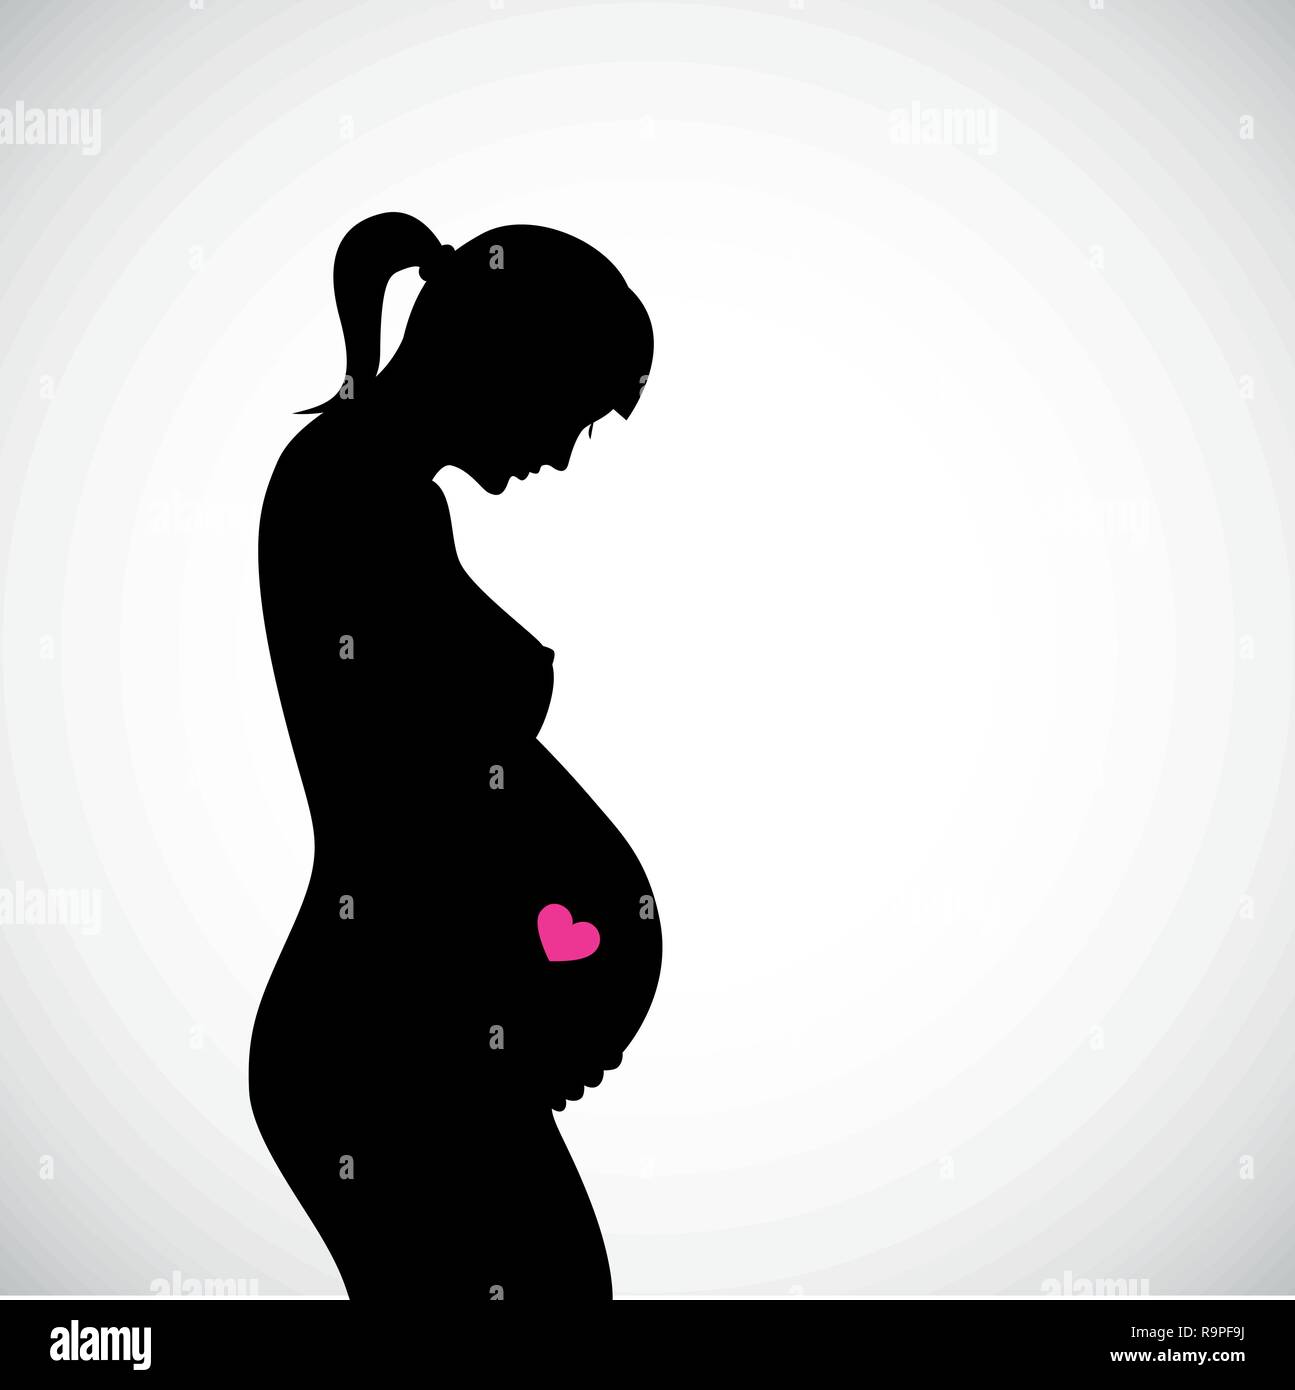 Femmes enceintes SVG, Baby Bump SVG, Grossesse Révéler SVG, Fille enceinte  SVG. Fichier de coupe vectorielle Cricut, Silhouette, Pdf Png Dxf Eps